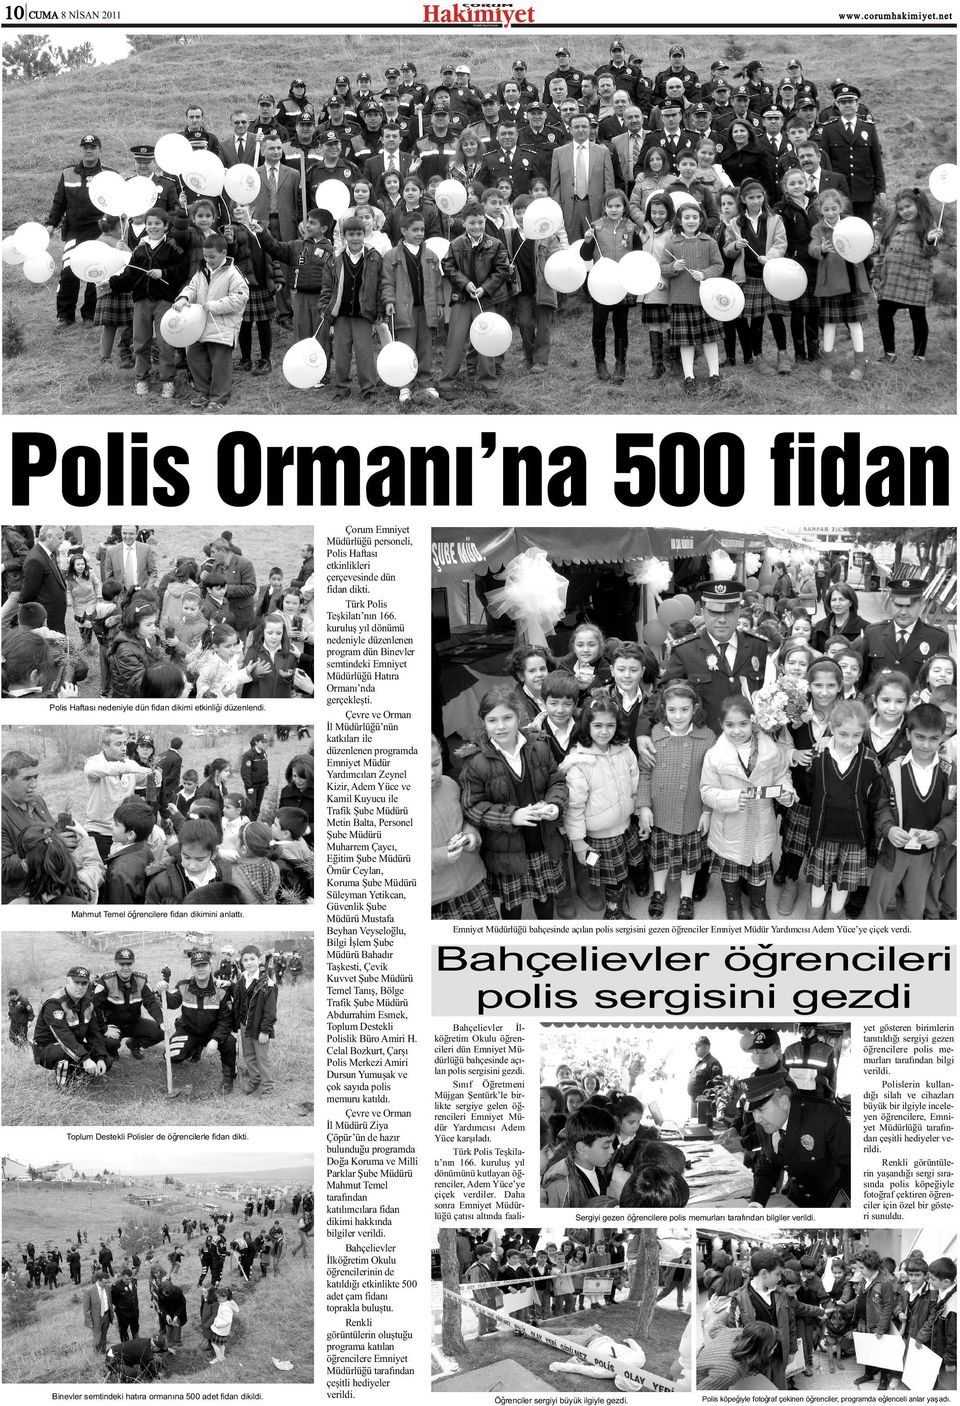 Türk Polis Teþkilatý nýn 166. kuruluþ yýl dönümü nedeniyle düzenlenen program dün Binevler semtindeki Emniyet Hatýra Ormaný nda gerçekleþti.